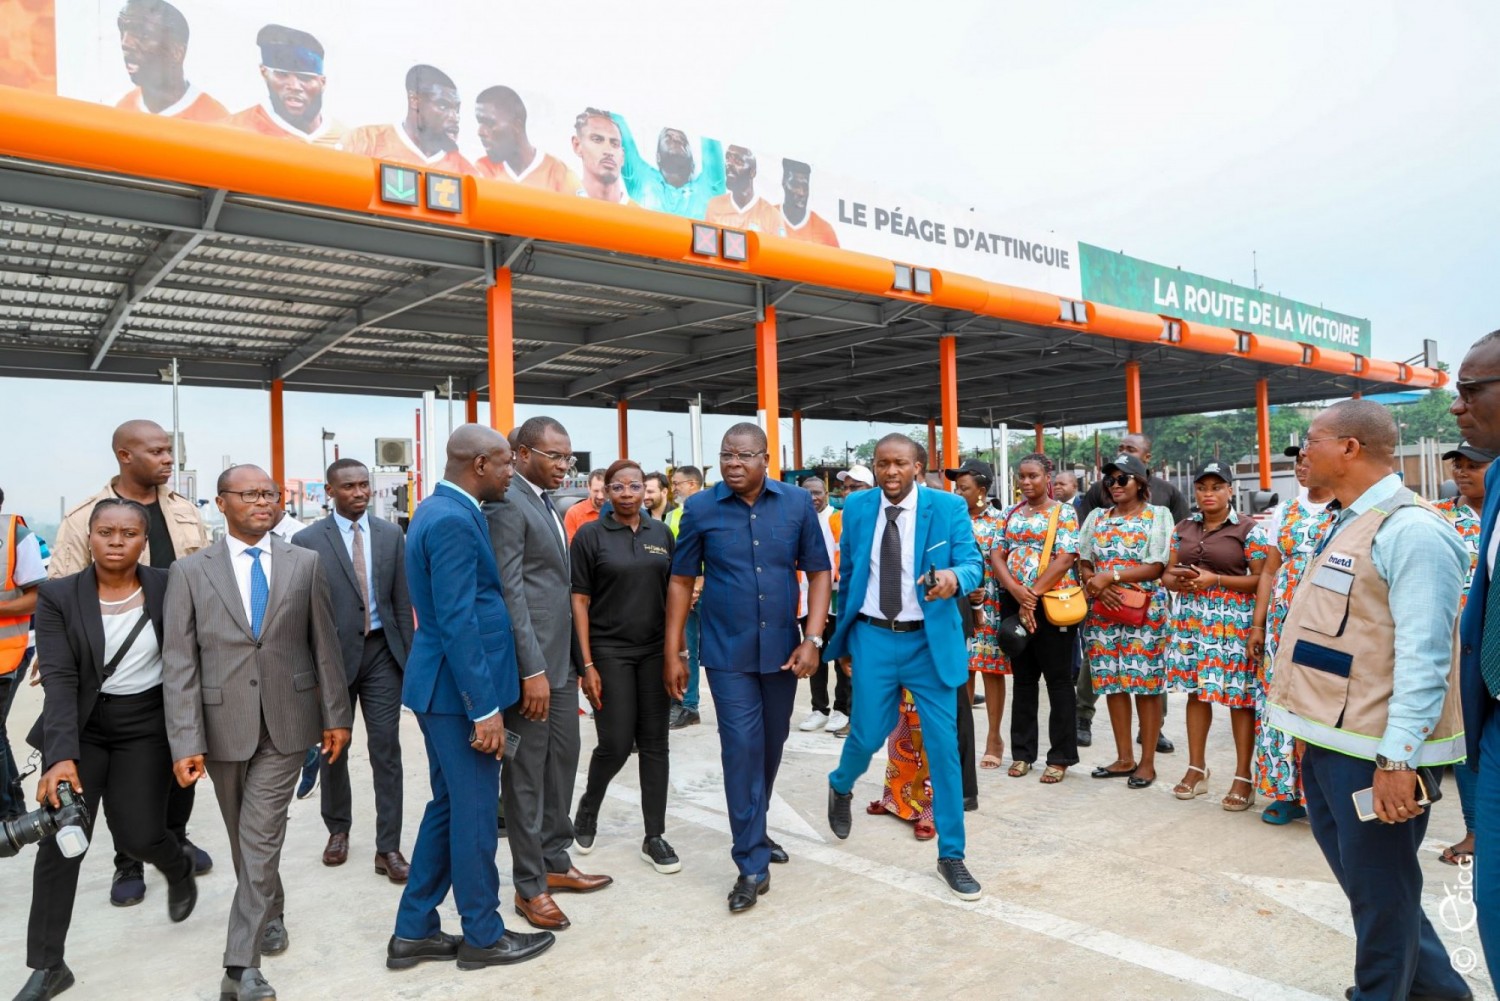 Côte d'Ivoire : Mise en service de l'extension de la station de péage d'Attinguié